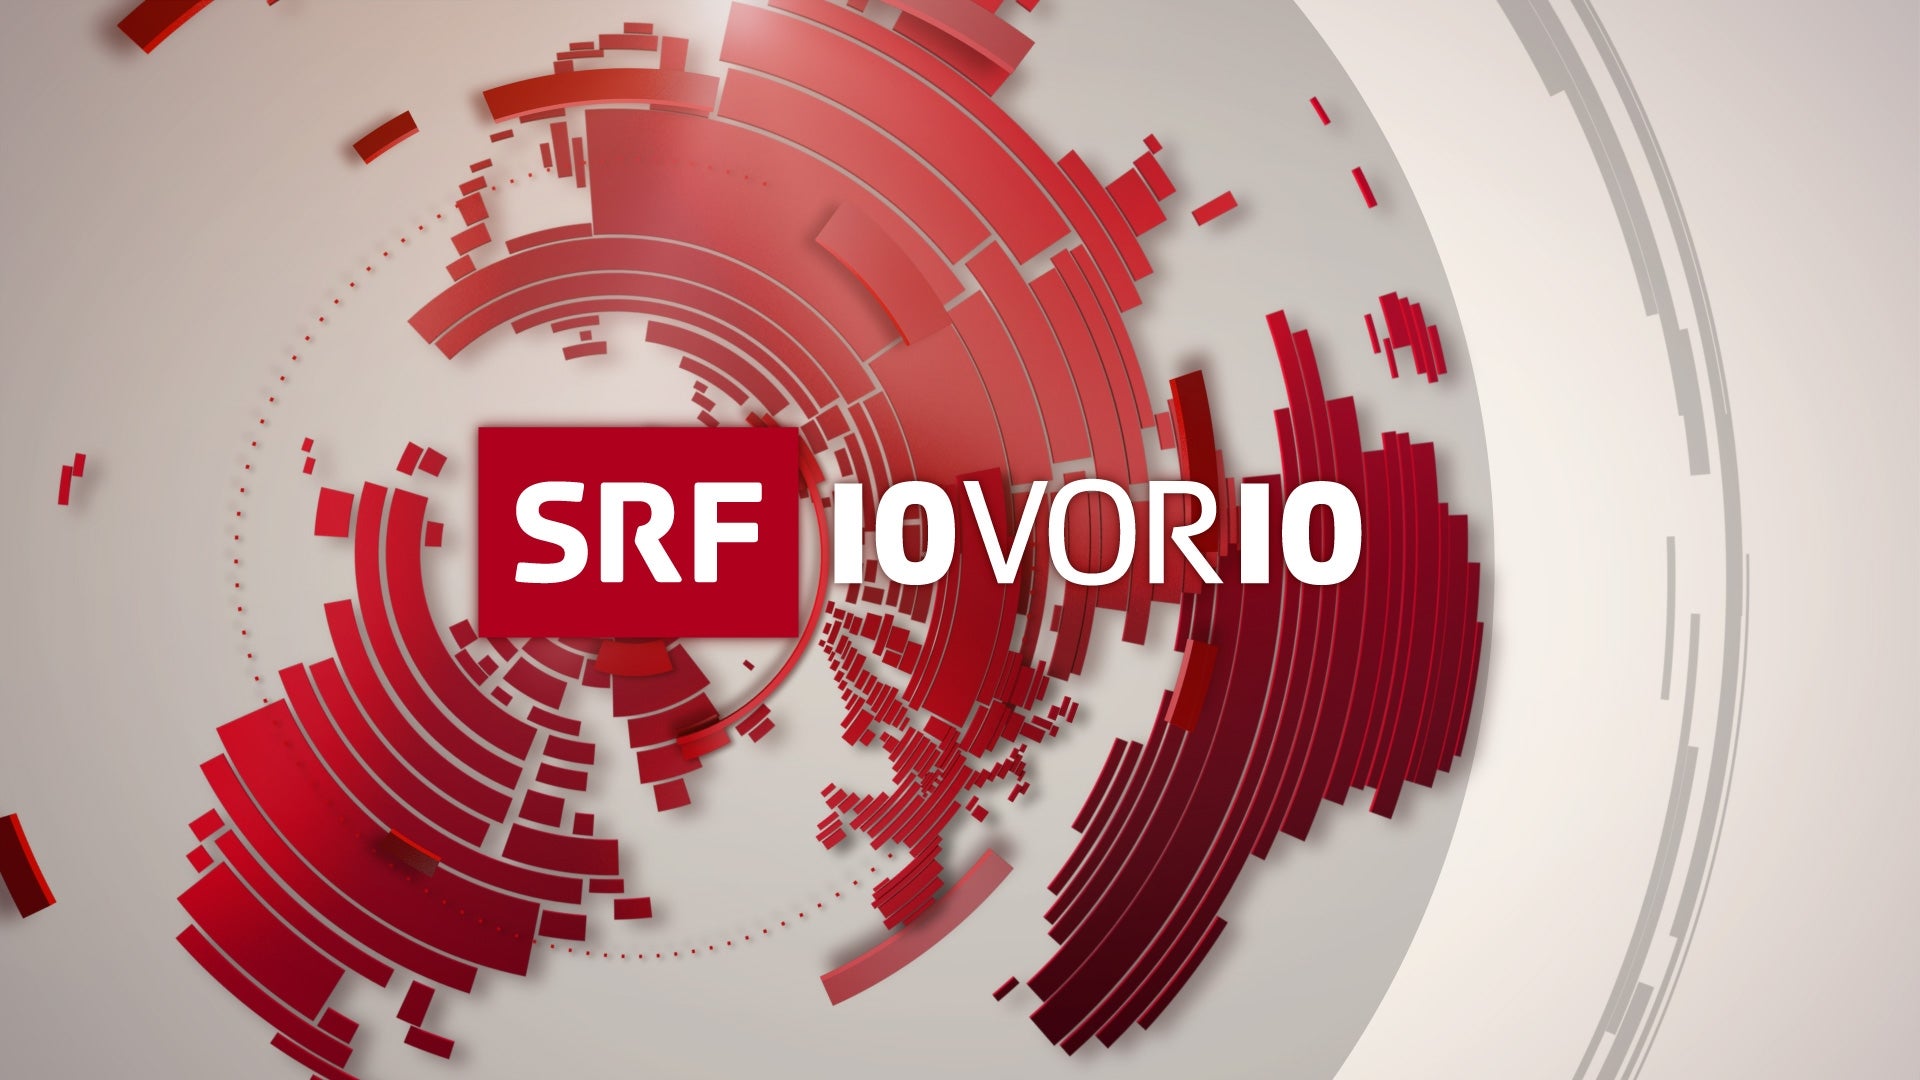 TV ratings for 10vor10 in Argentina. SRF 1 TV series